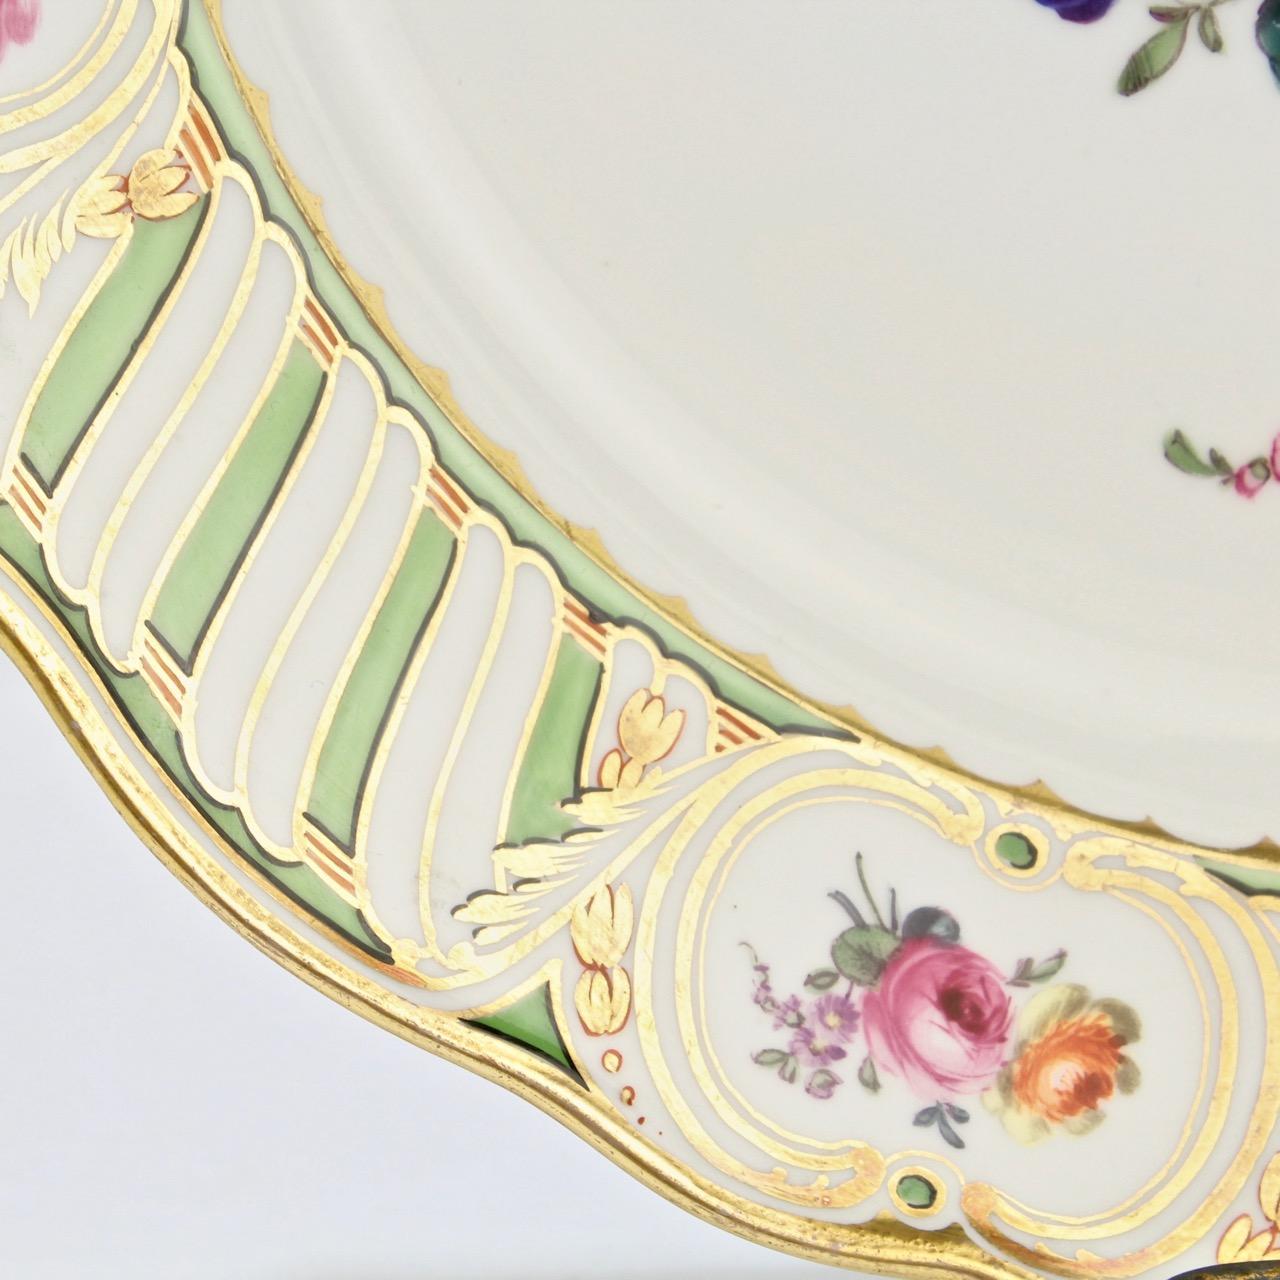 6 Antique Vienna Porcelain Plates with Green Borders & Deutsche Blumen Flowers 8